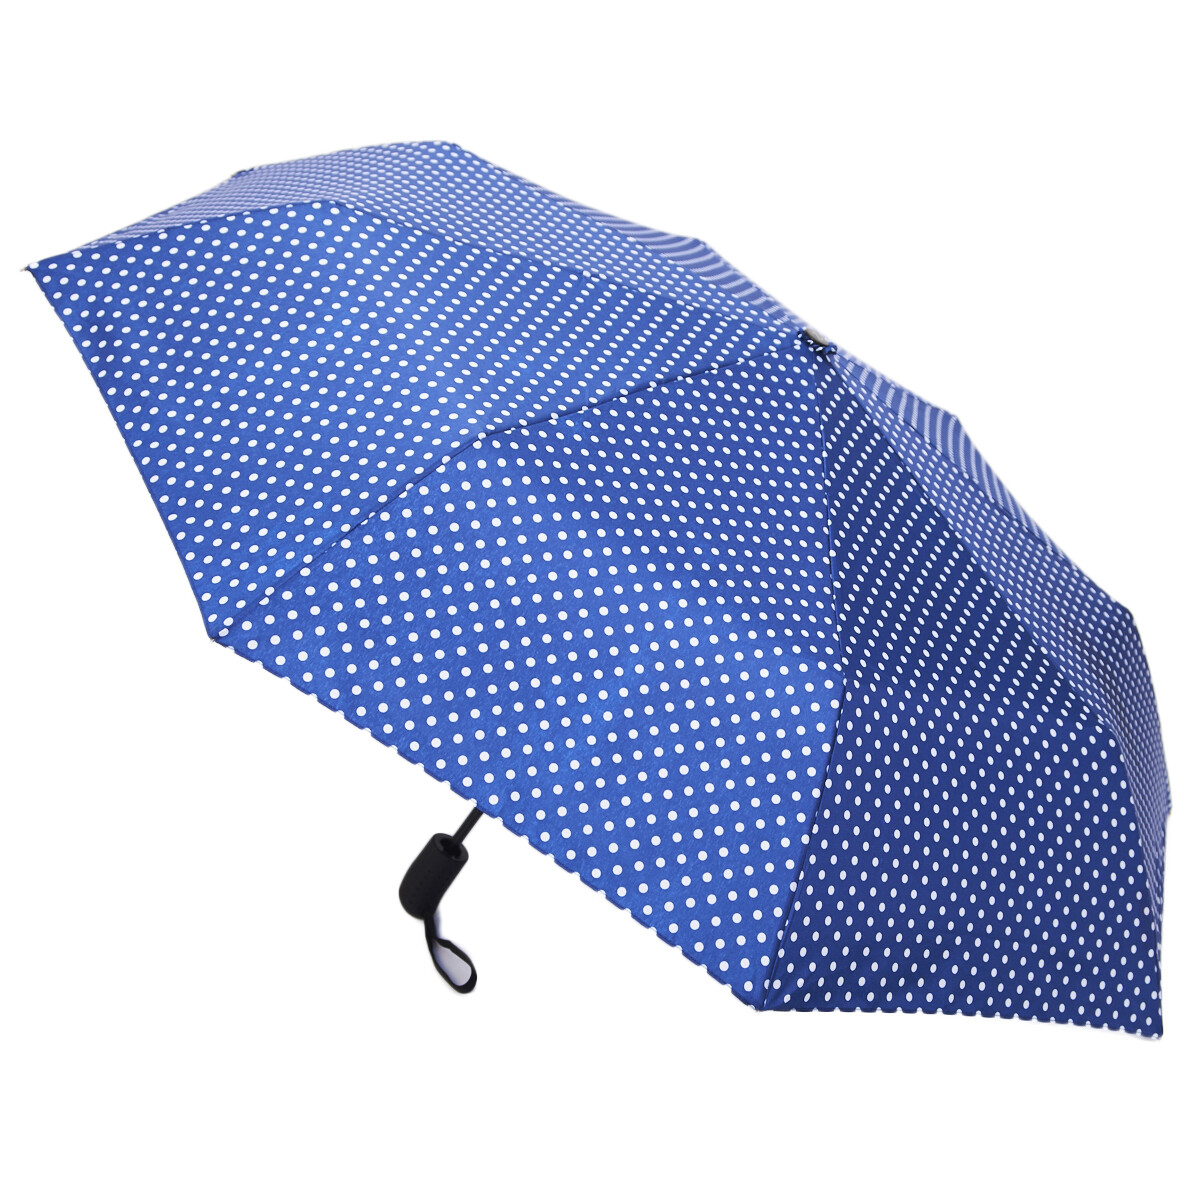 Зонт зонт детский amoru механический чехол игрушка заяц синий в белый горох 90 см